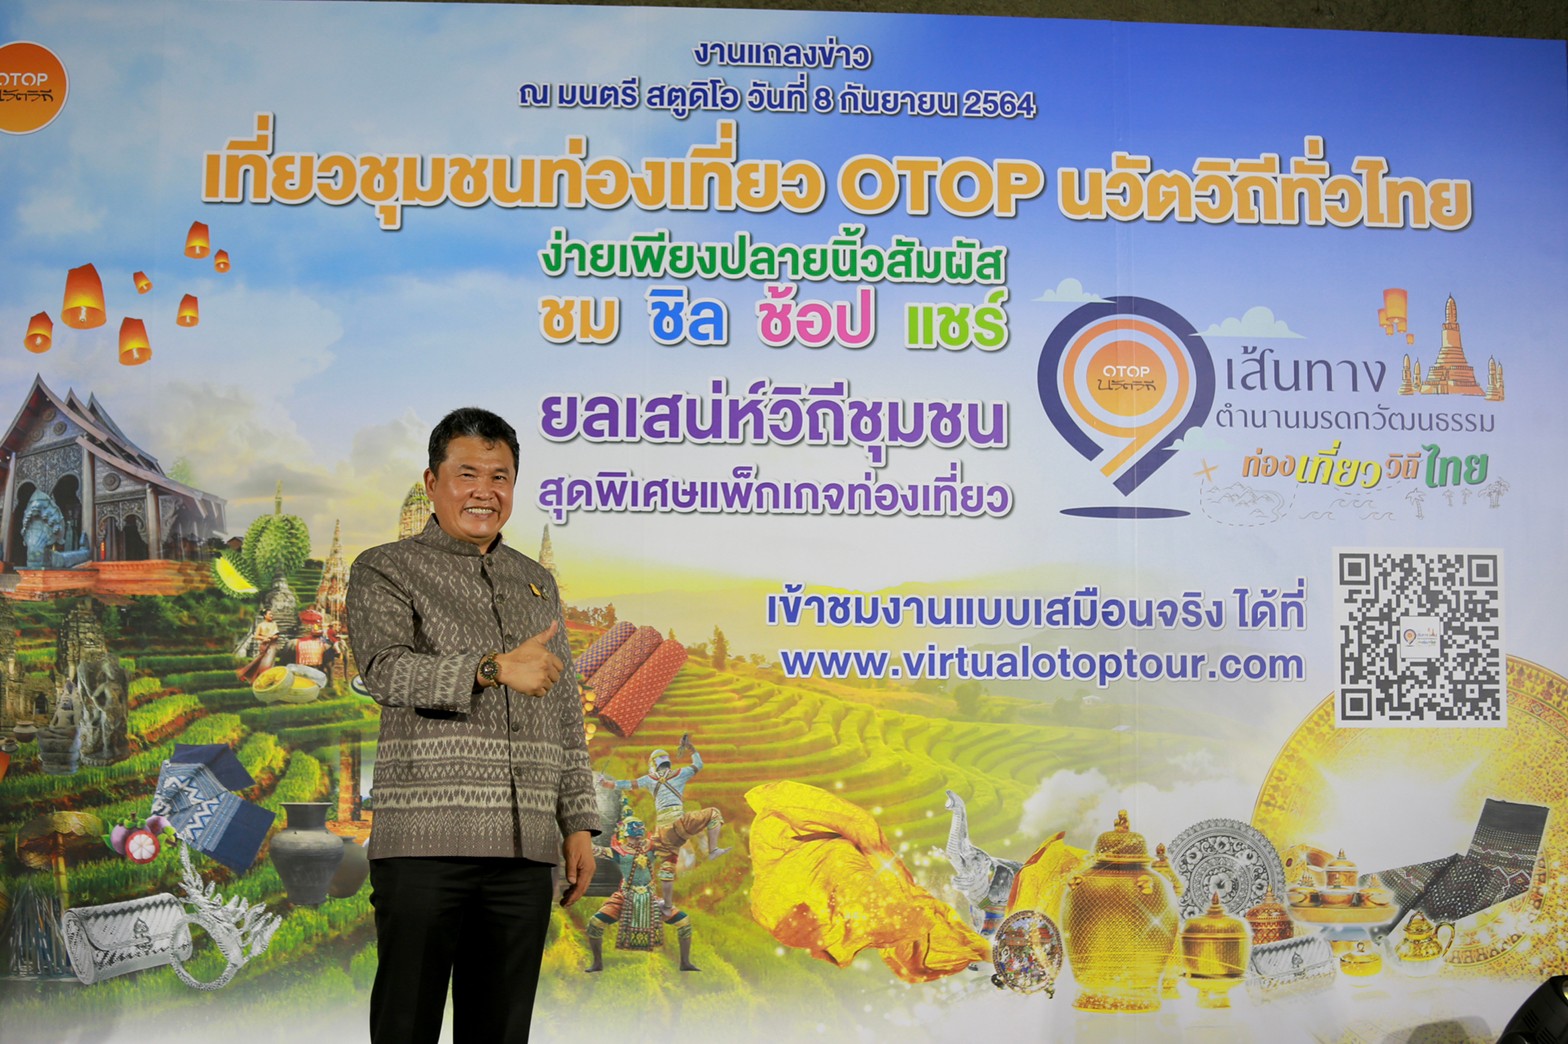 กรมการพัฒนาชุมชน จัดใหญ่ “Virtual Tour” อลังการสุดบนโลกออนไลน์เที่ยวชุมชนท่องเที่ยว OTOP นวัตวิถี 9 เส้นทางมรดกวัฒนธรรมวิถีไทย ลุ้น“สร้อยคอทองคำ”